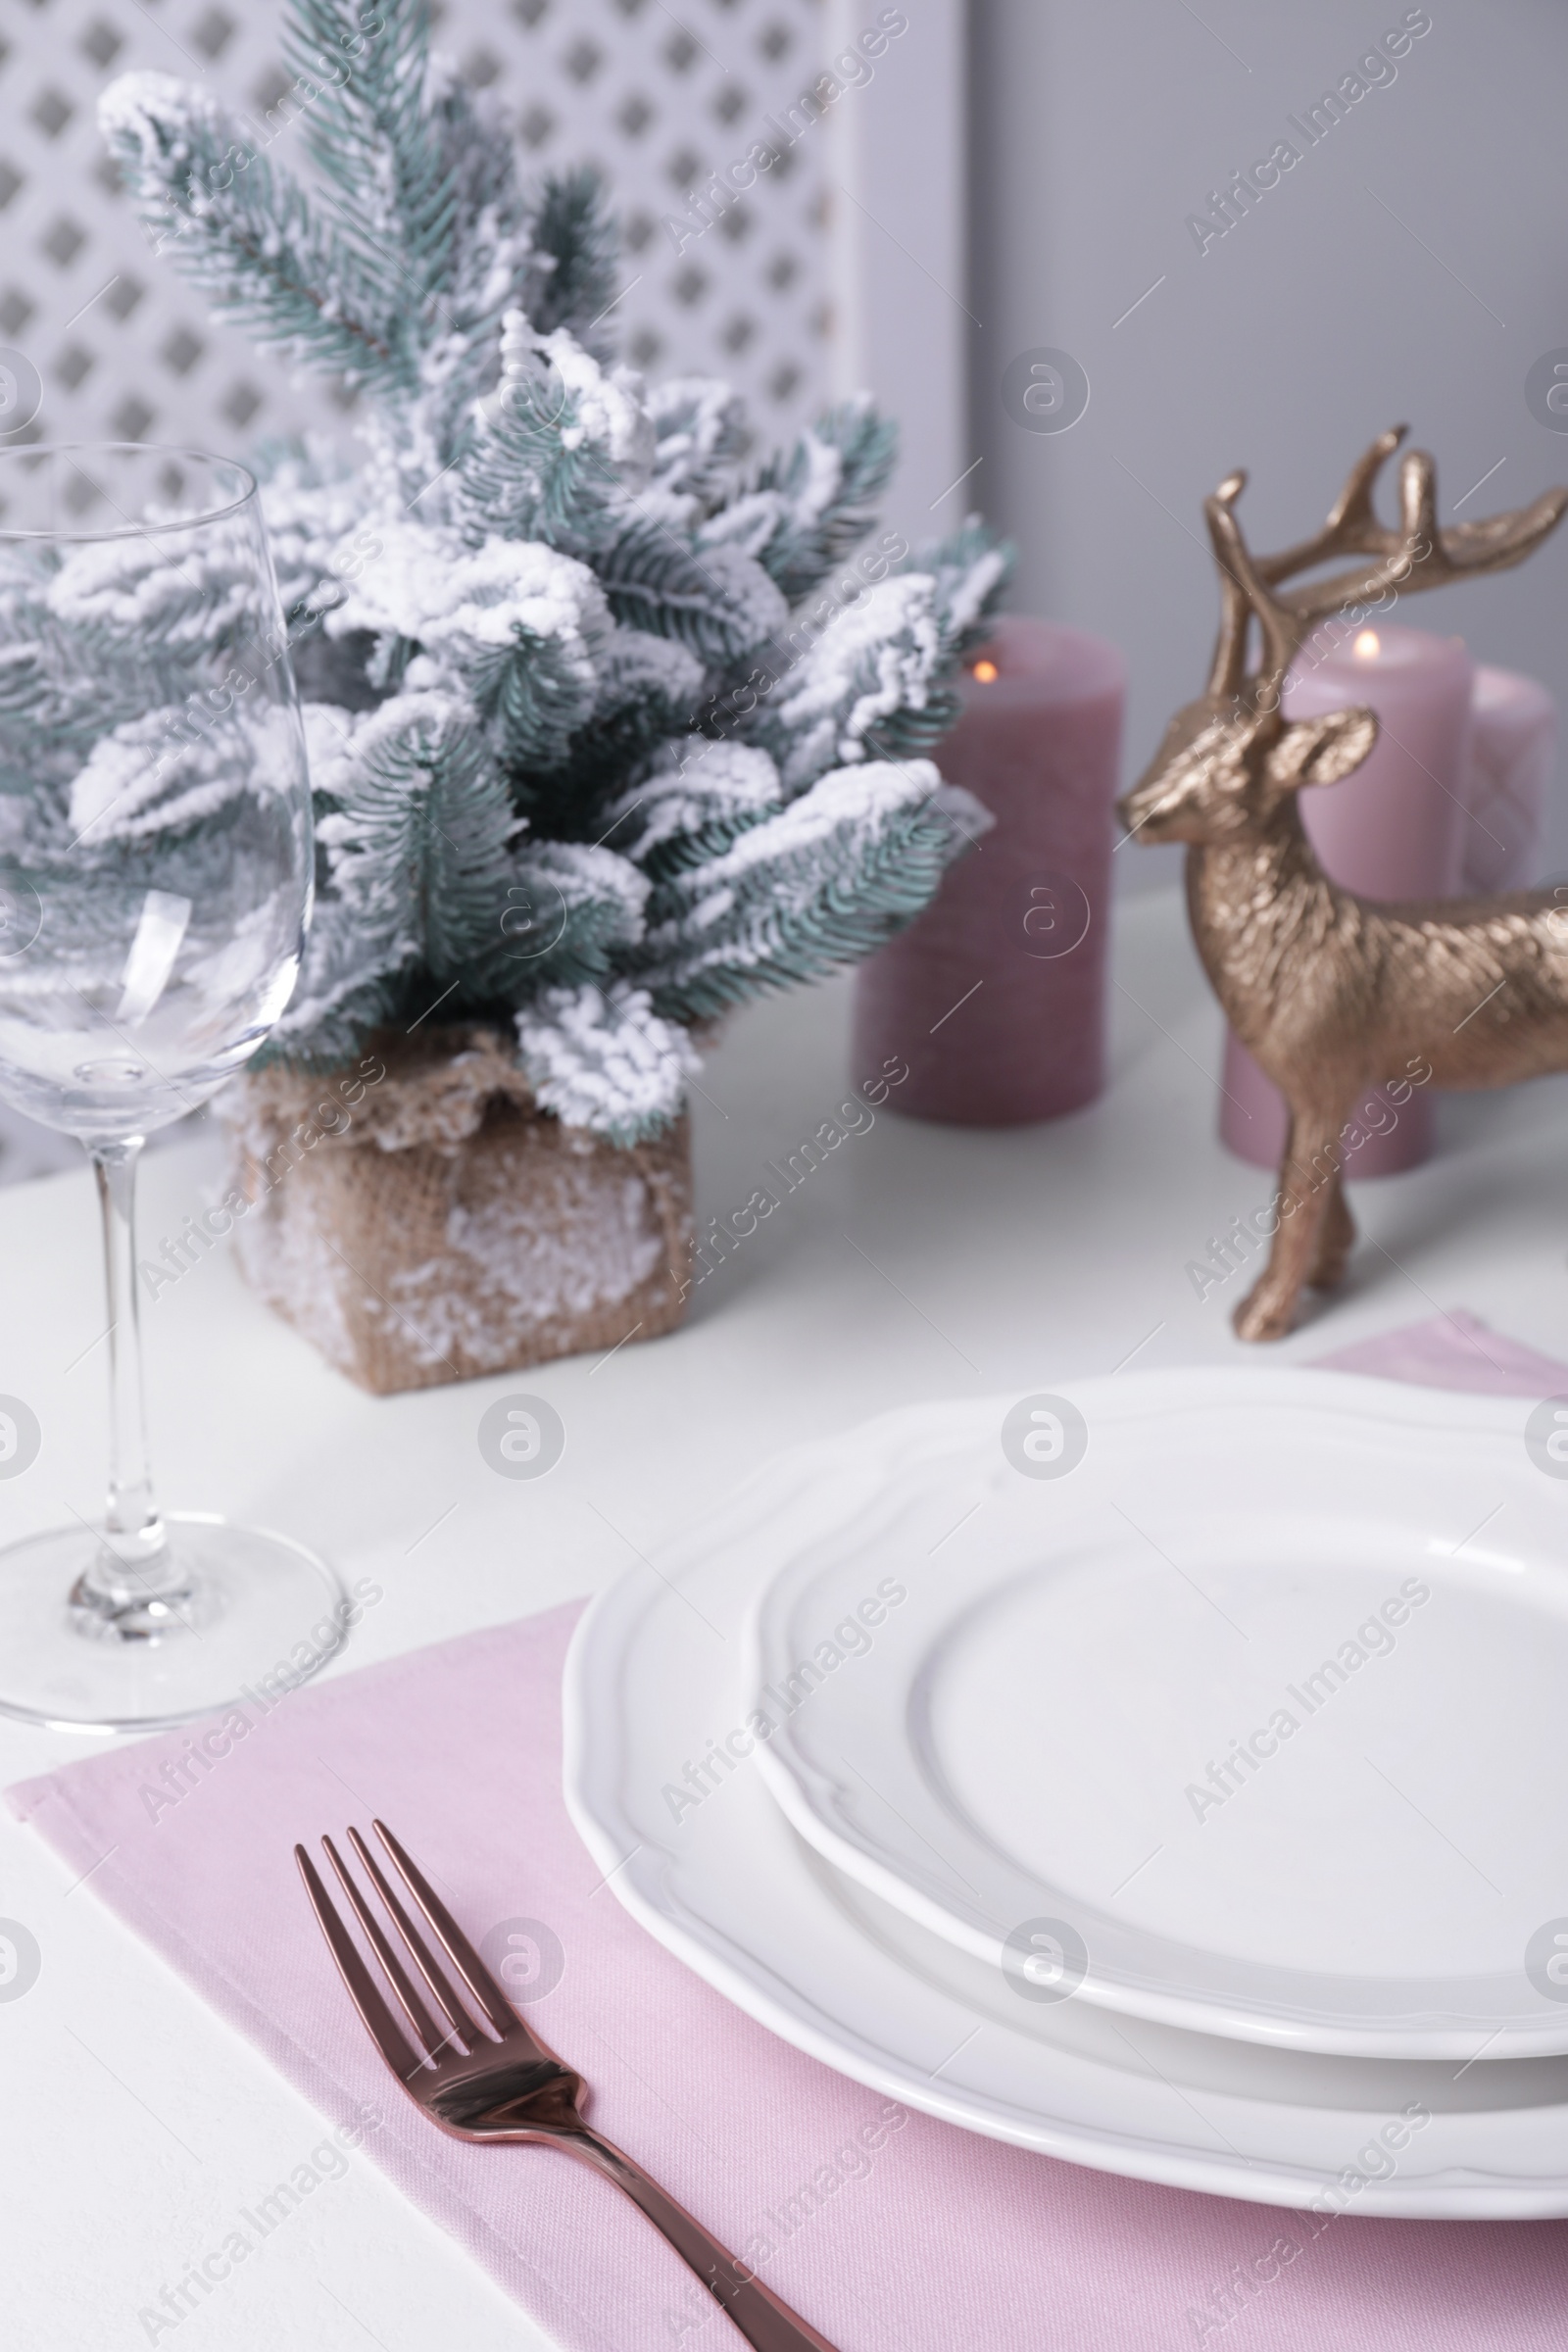 Photo of Stylish table setting and festive decor on white background